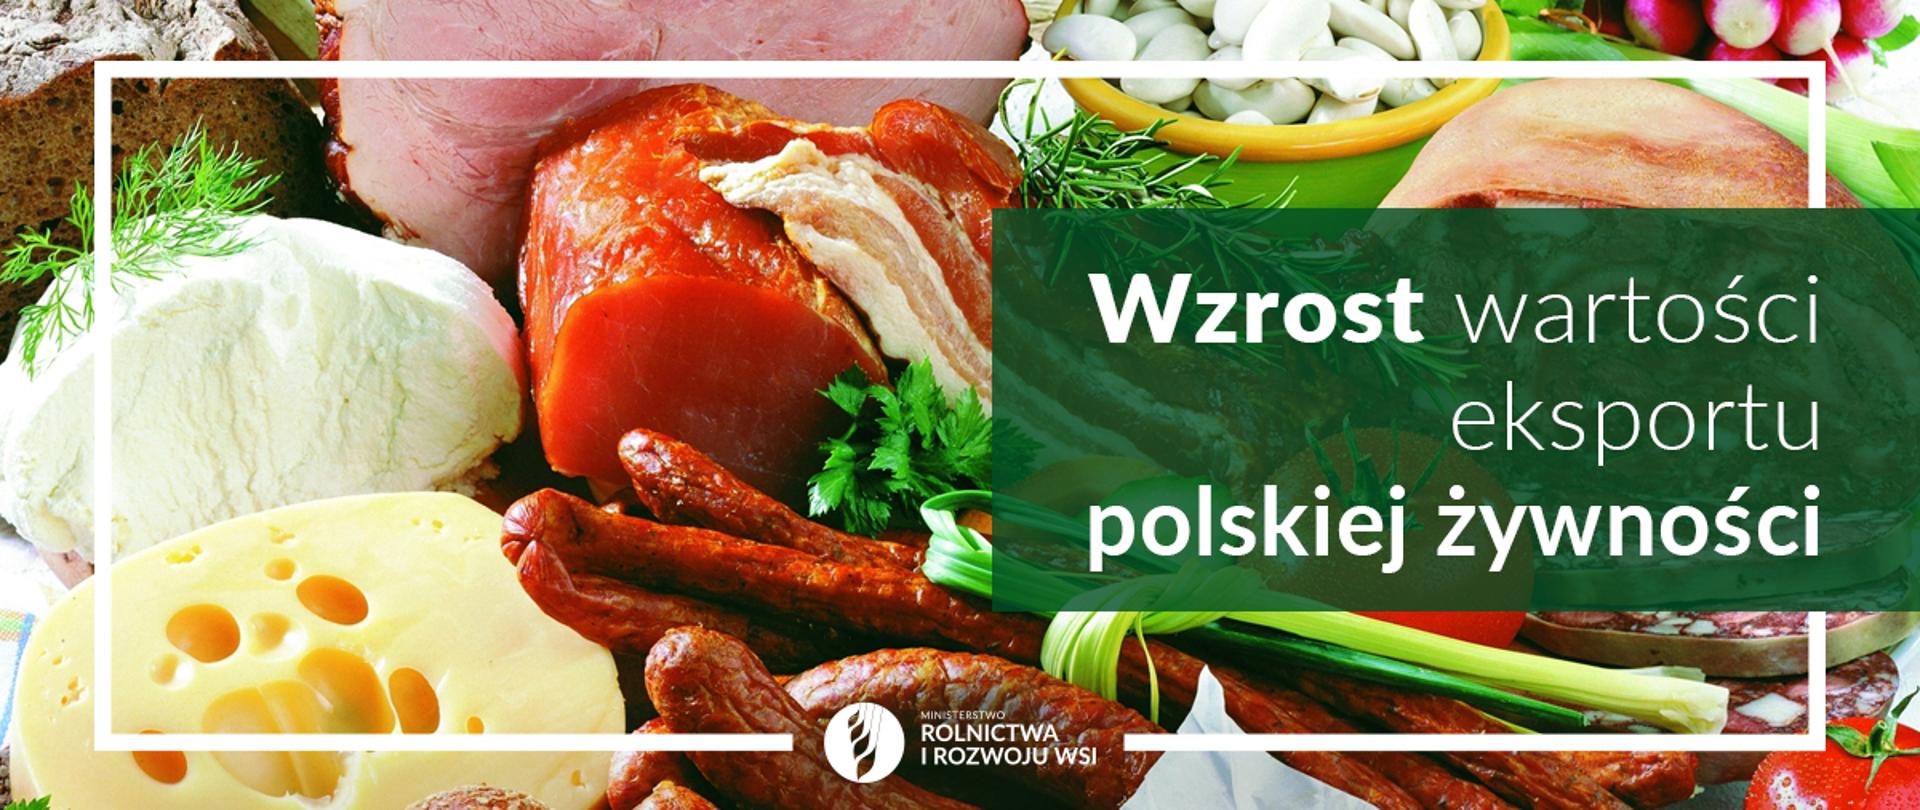 grafika do komunikatu "Wzrost wartości eksportu polskiej żywności"
Wędliny, sery i warzywa.